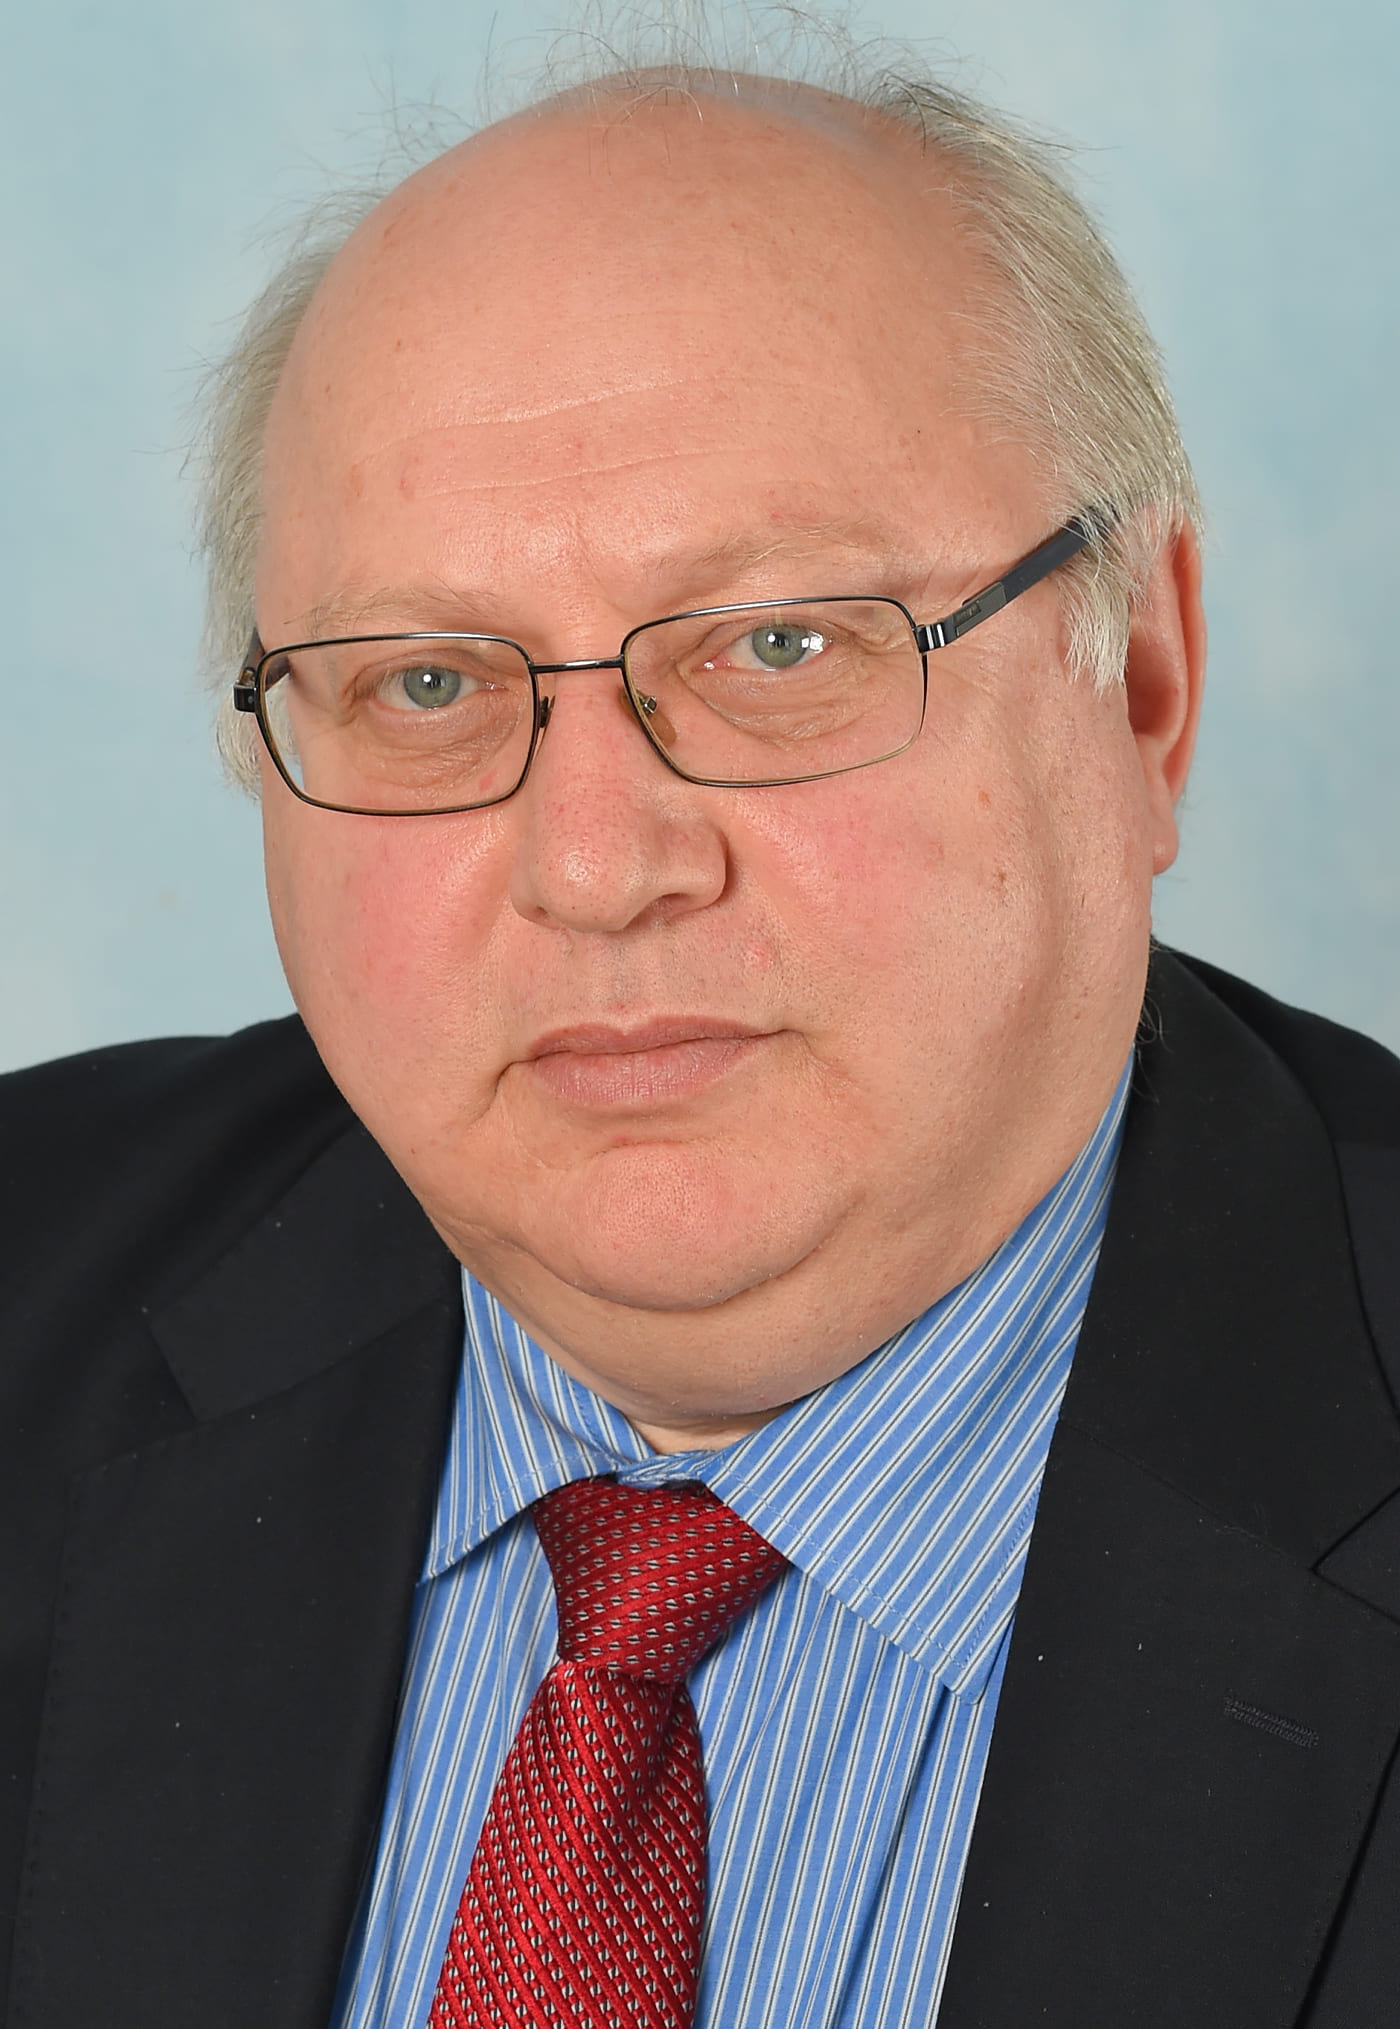 Елютин Сергей Олегович- лектор, учитель физики, Директор, (2011-2020 гг.)